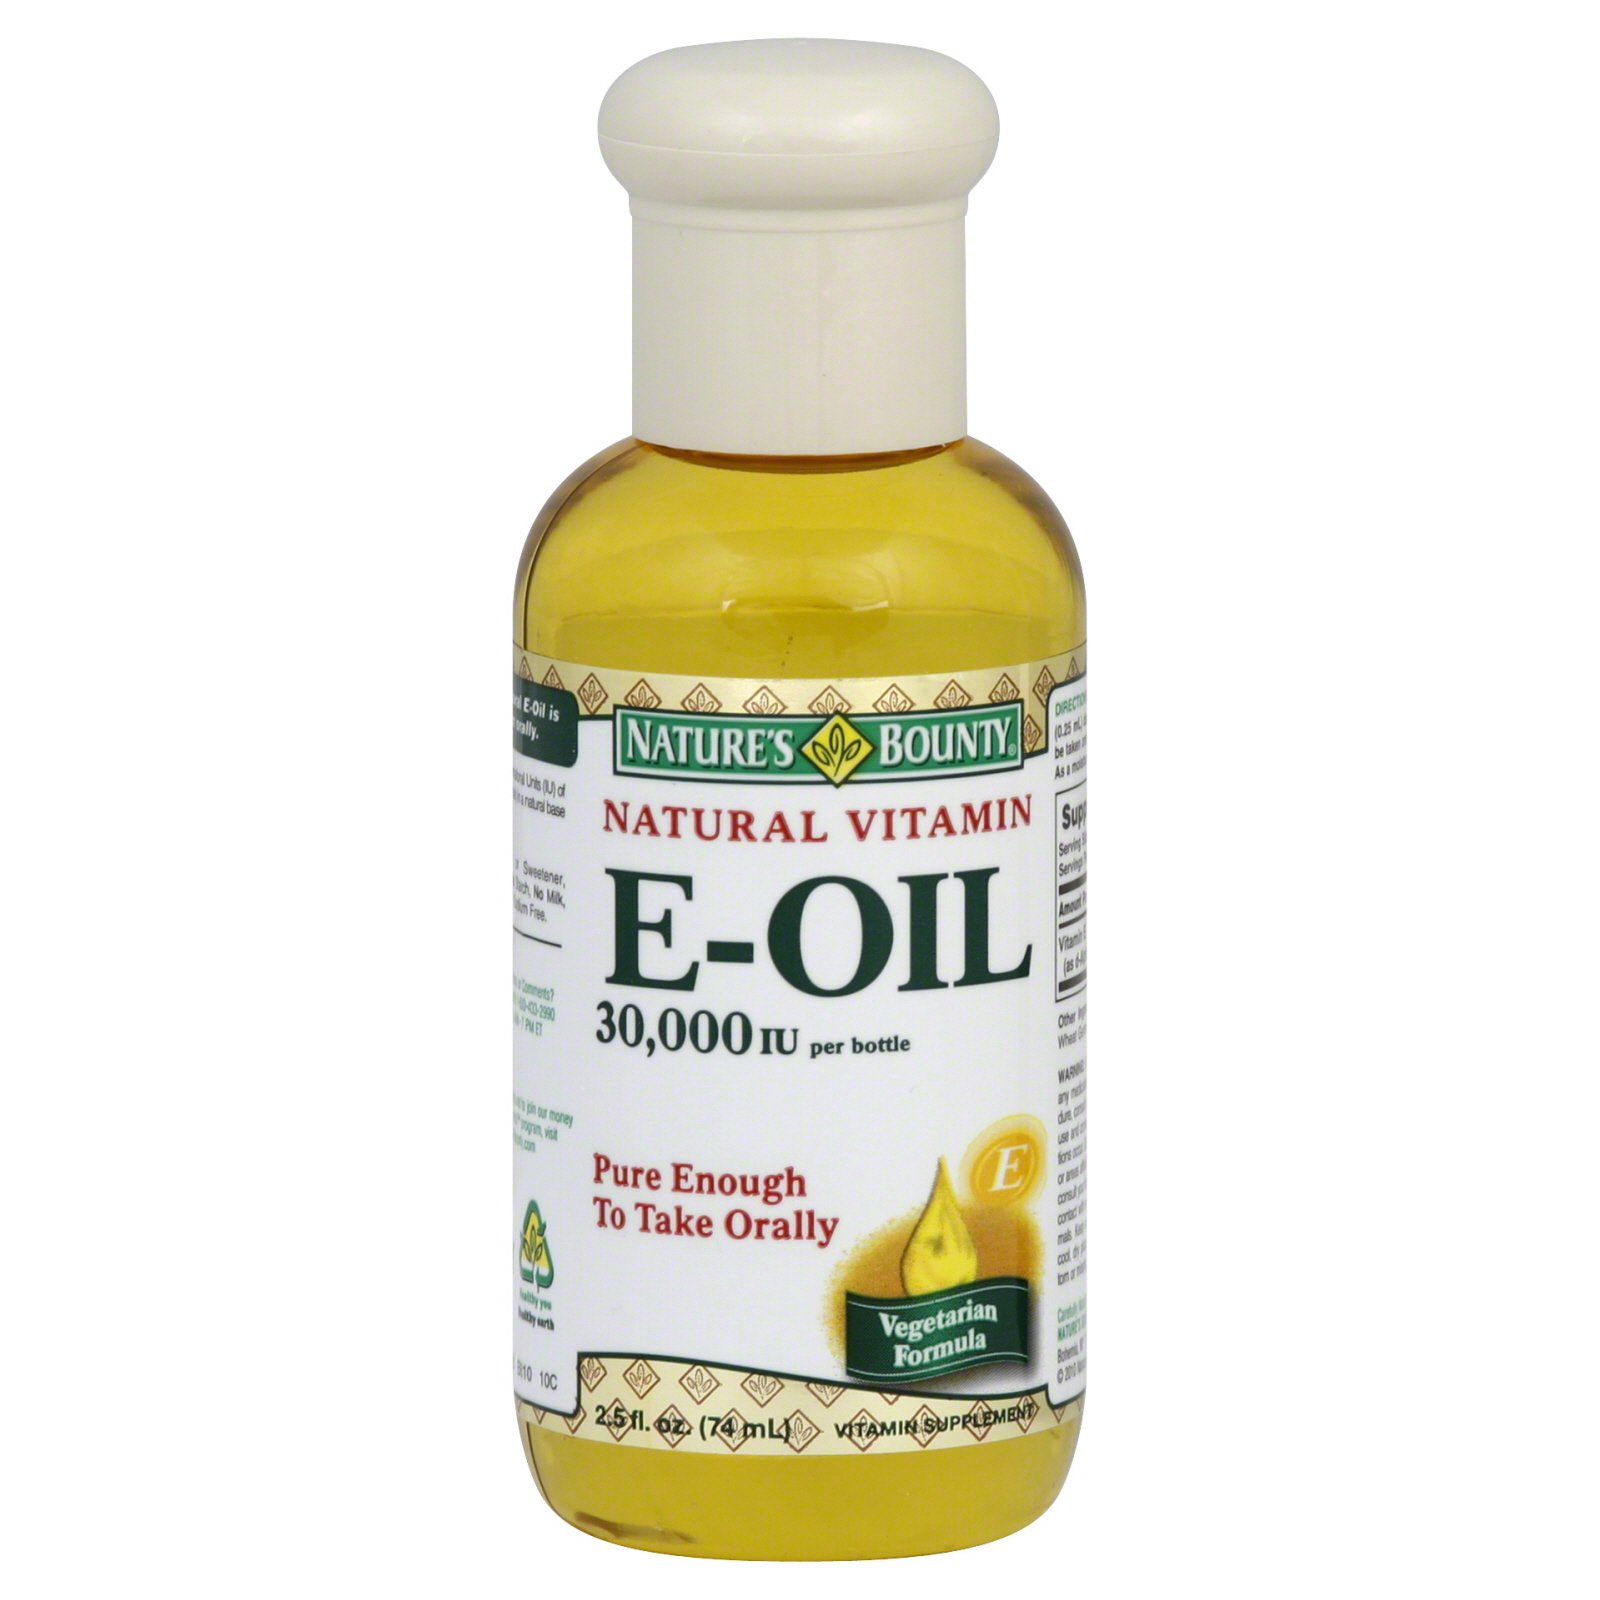 Vitamin E-Oil, Natural, Vegetarian Formula, 2.5 fl oz